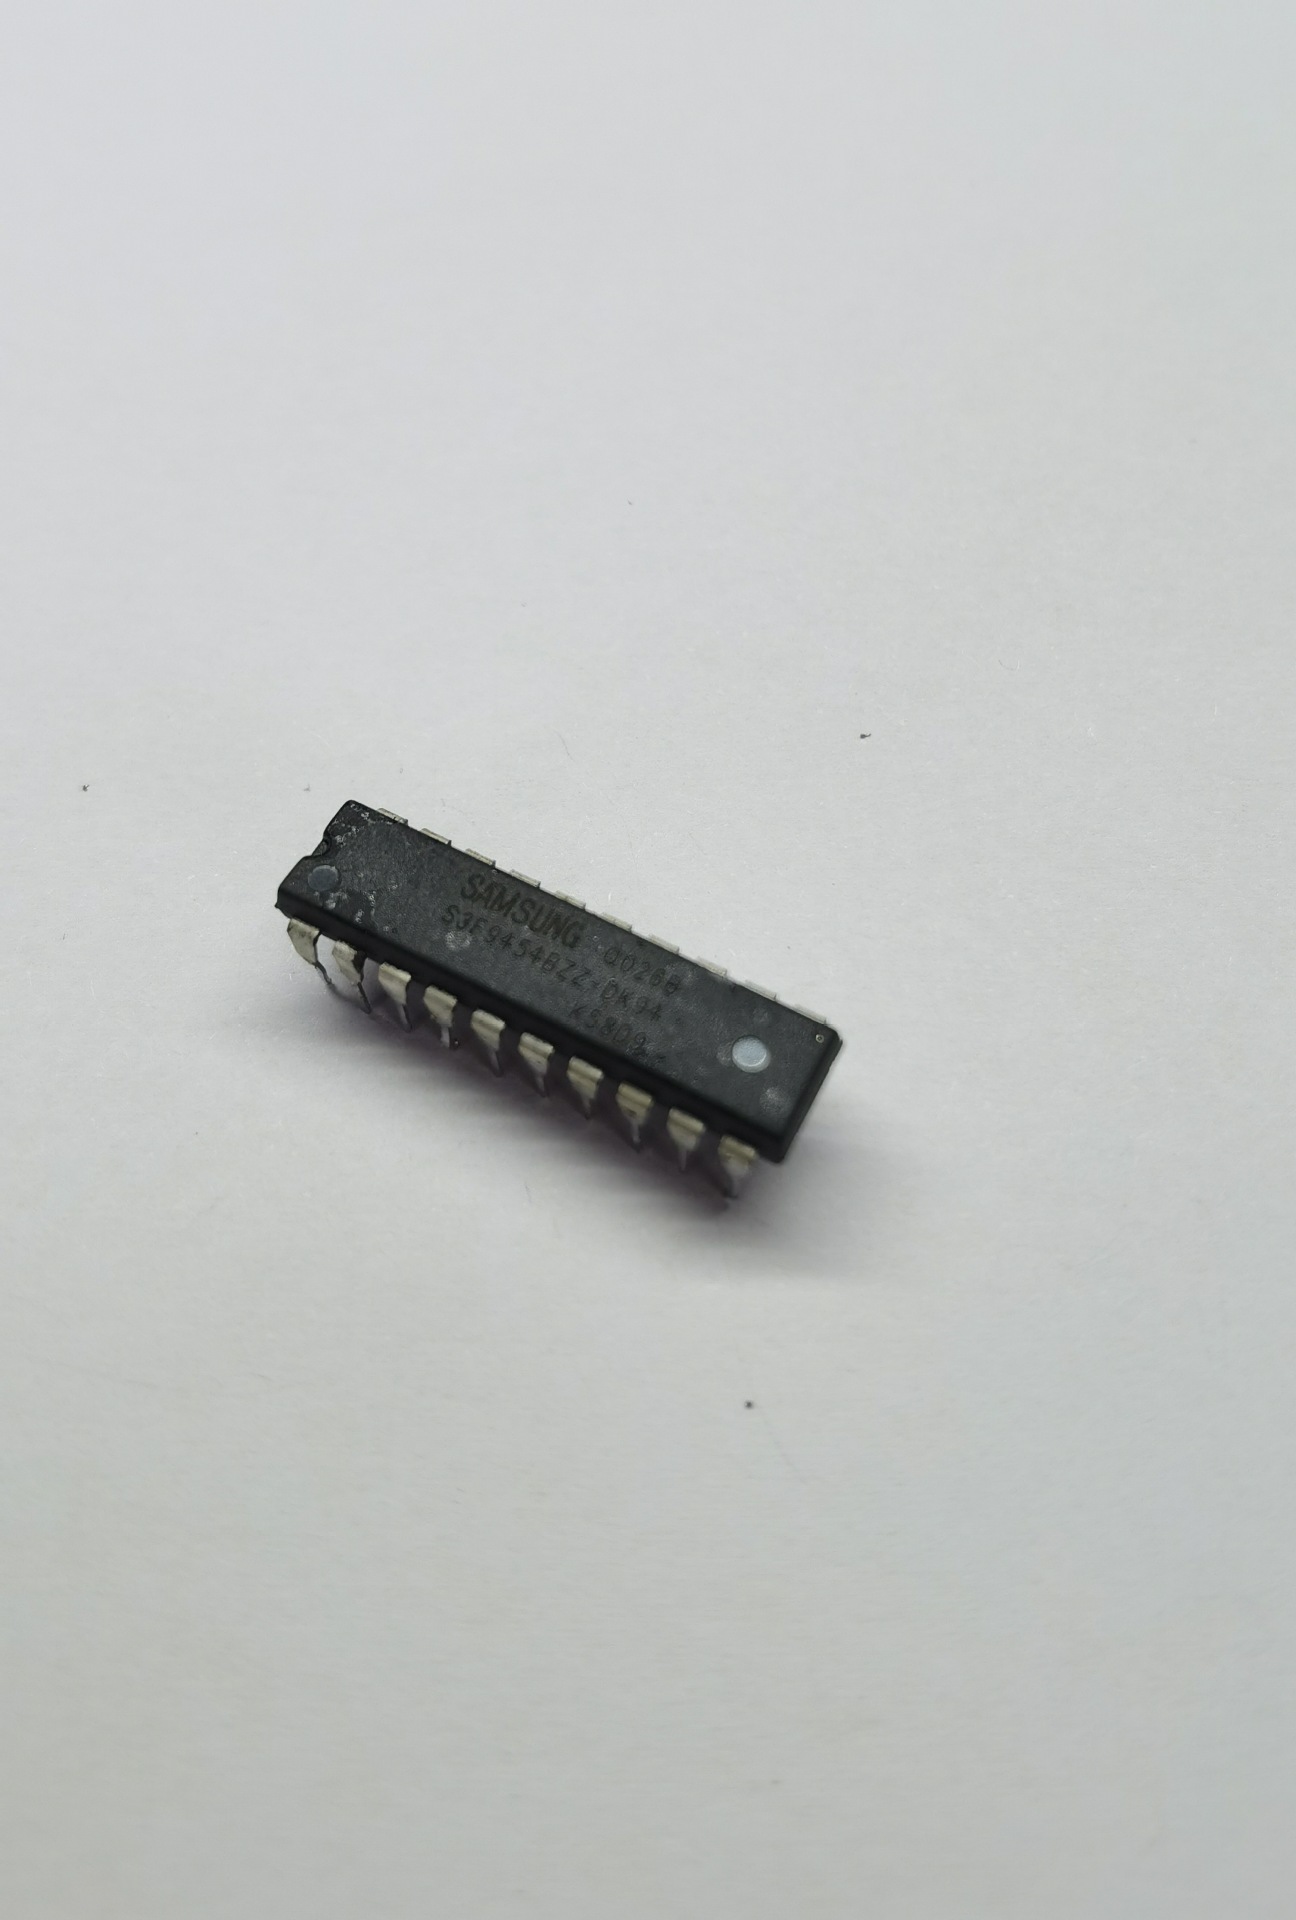 三星 S3F9454BZZ-DKB4 拆机芯片出售 flash可重复烧录不影响使用